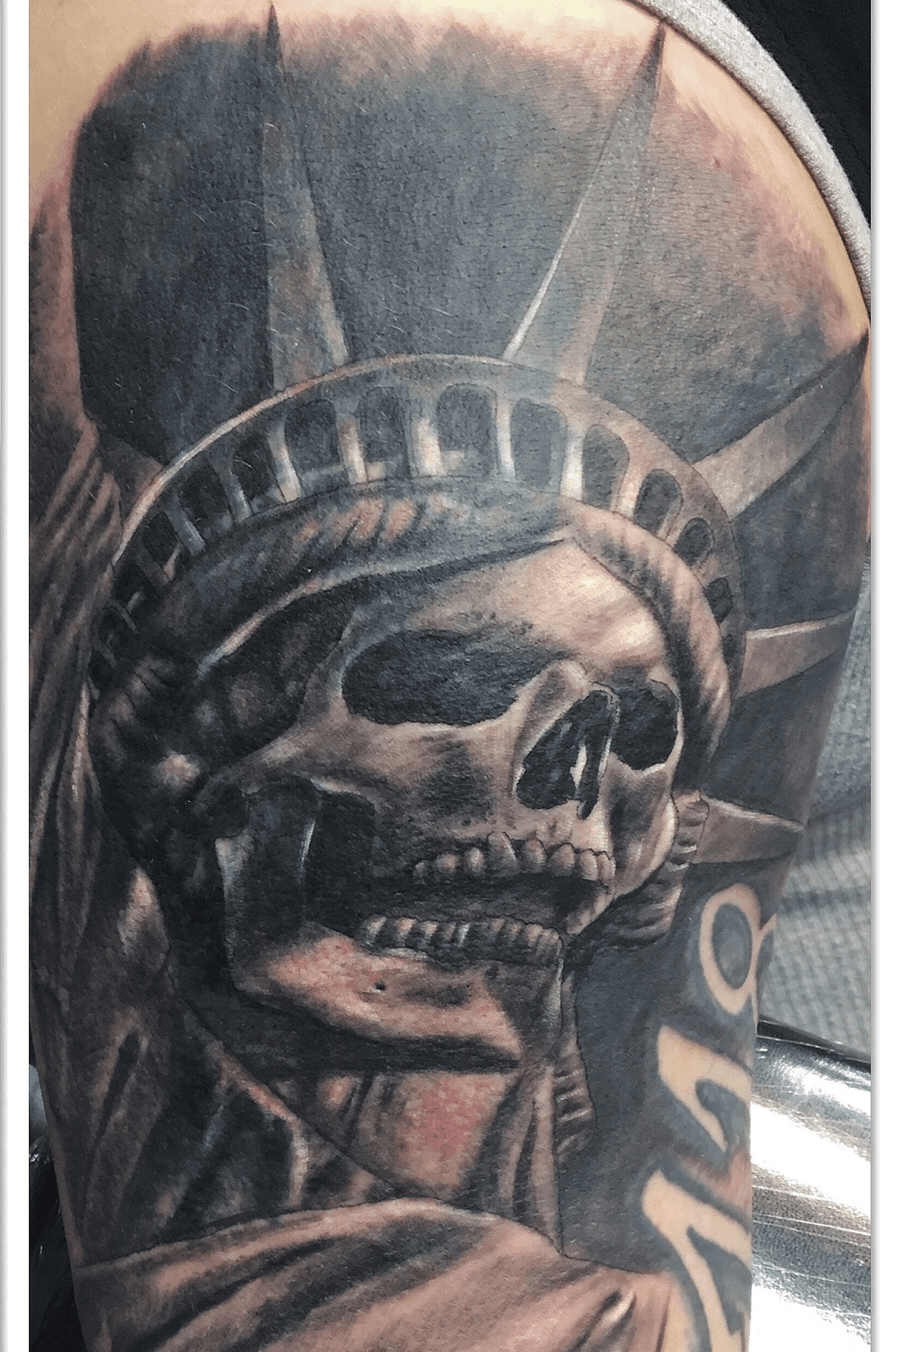 Tattoo uploaded by Will Hicks  Statue of liberty skull tattoo  Tattoodo